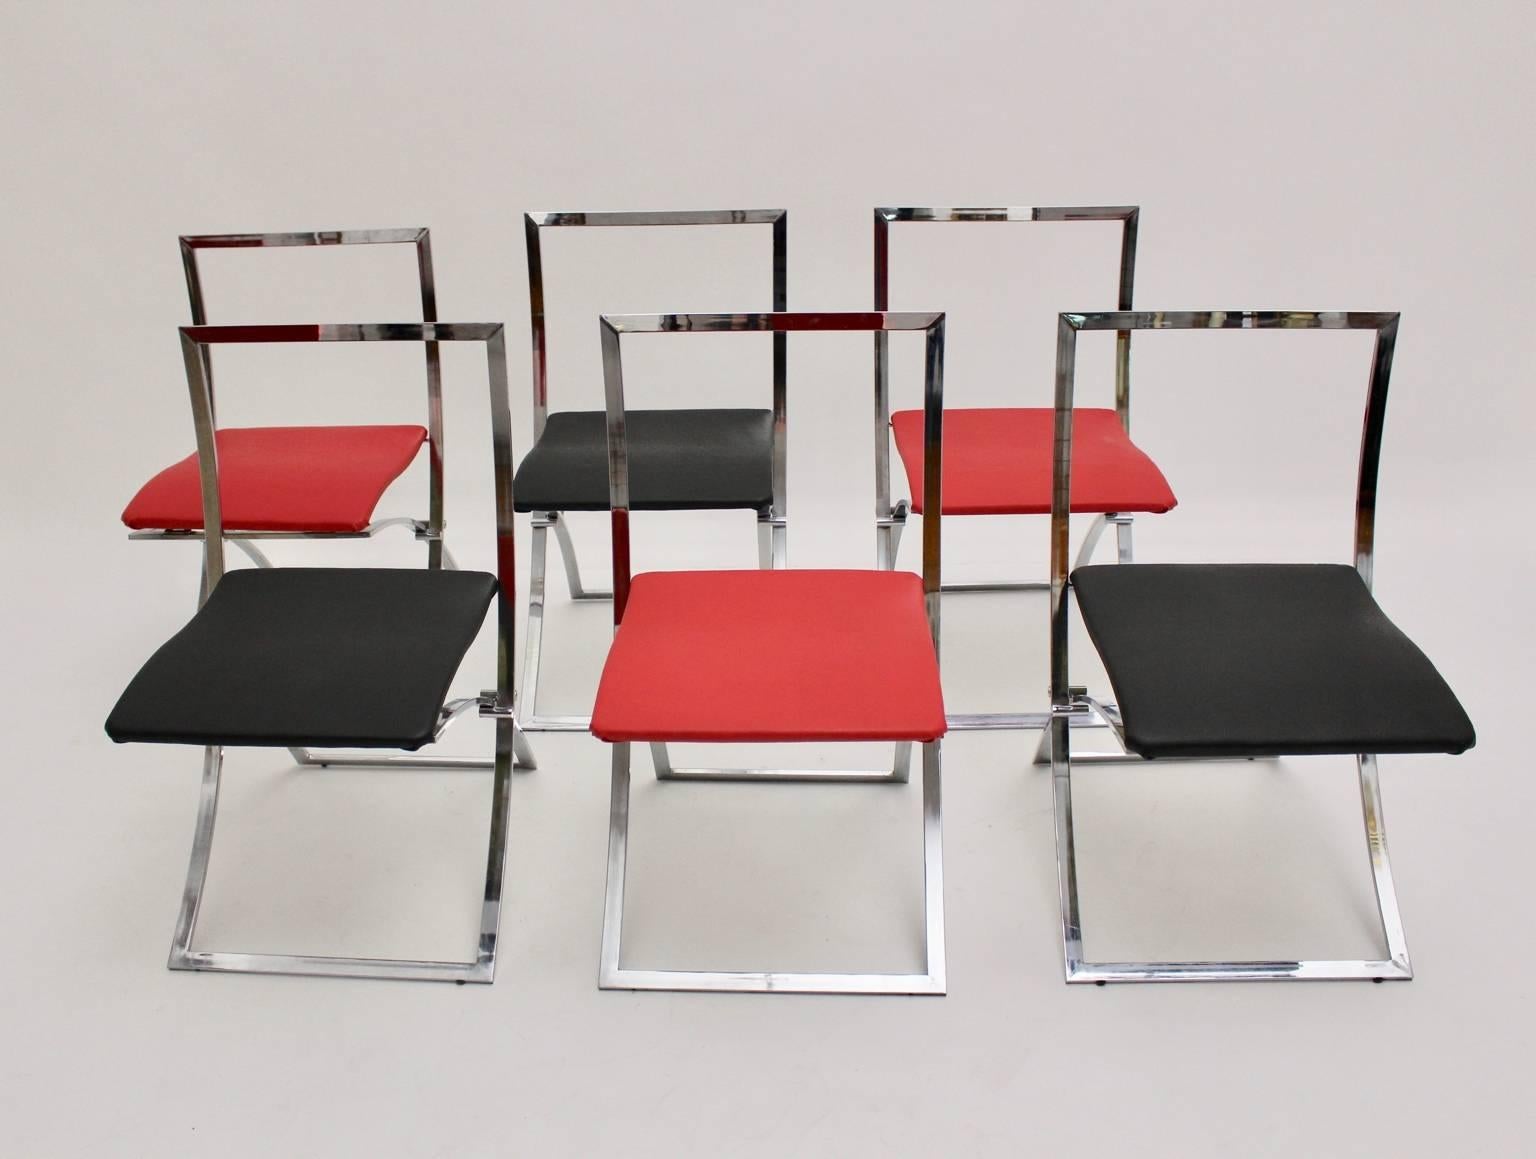 Chaises de salle à manger vintage Mid Century Modern modèle Luisa conçu par l'architecte italien Marcello Cuneo, 1970, Italie et exécuté par Mobel.
Les chaises de salle à manger pliables semblent élégantes et intemporelles. 
La base est chromée. 